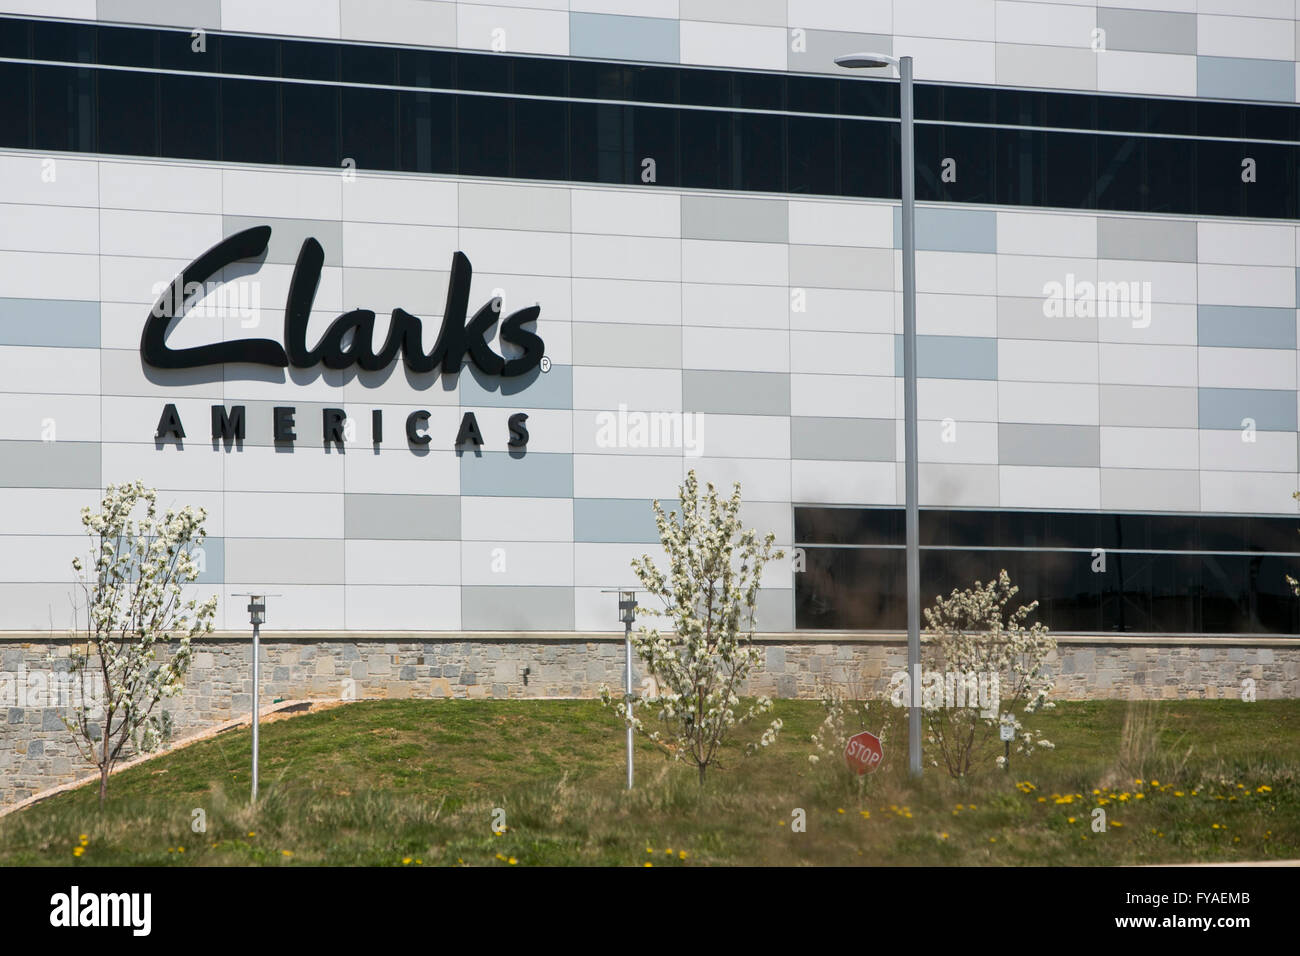 Un logotipo cartel fuera de una instalación ocupada por los fabricantes de calzado Clarks Américas en Hanover, Pennsylvania el 17 de abril de 2016. Foto de stock